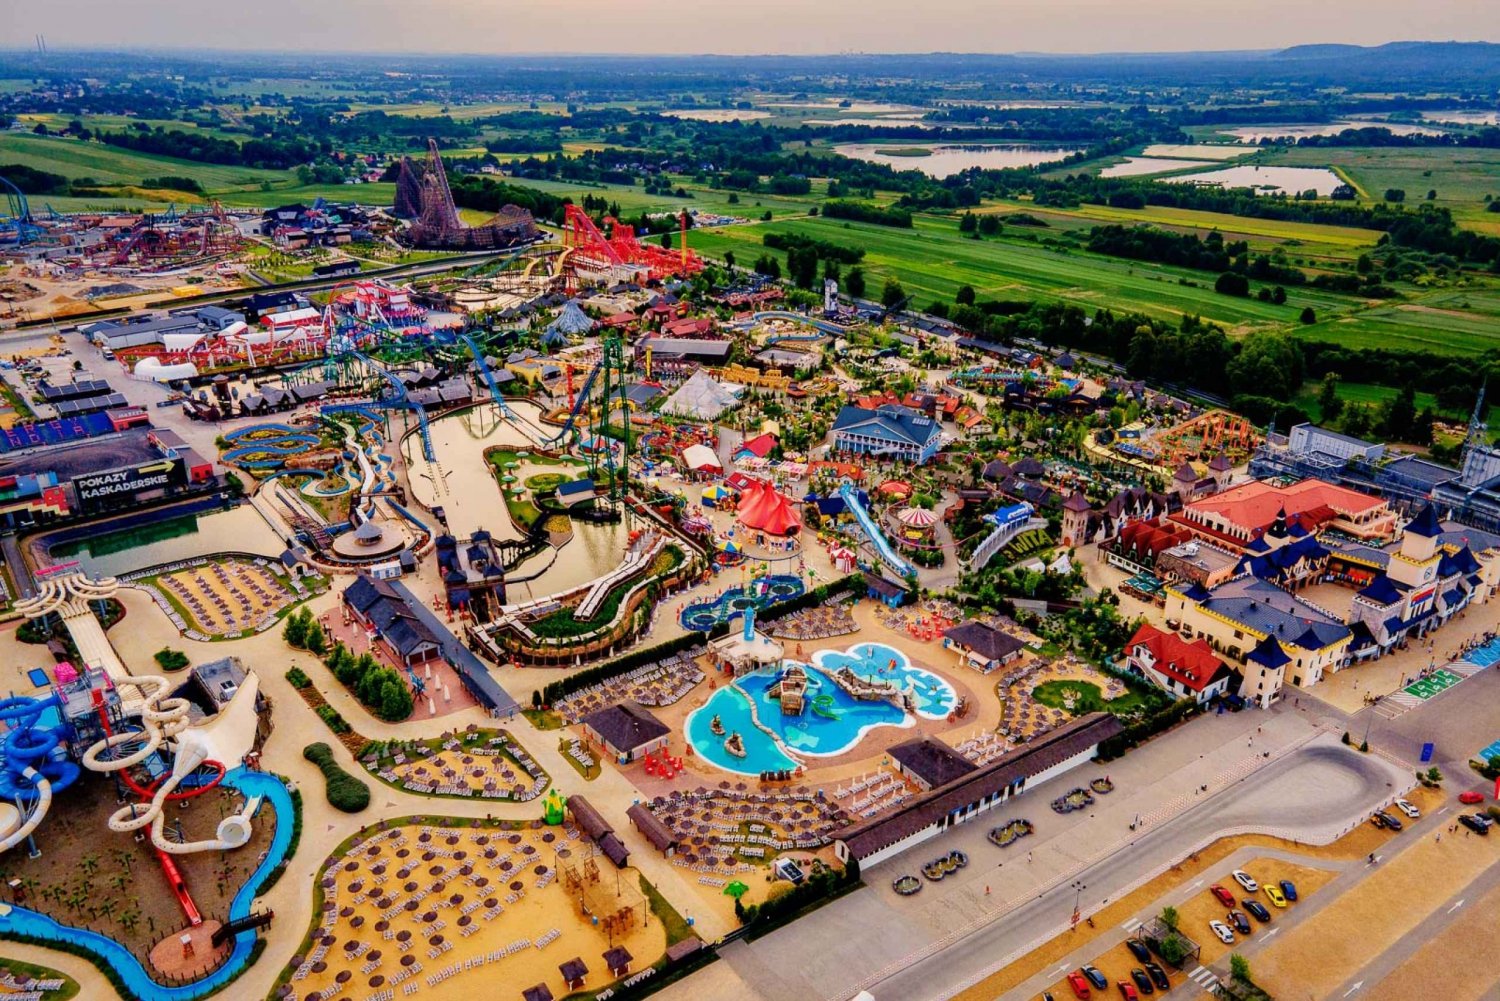 Krakow: Energylandia Amusement Park Entry Ticket